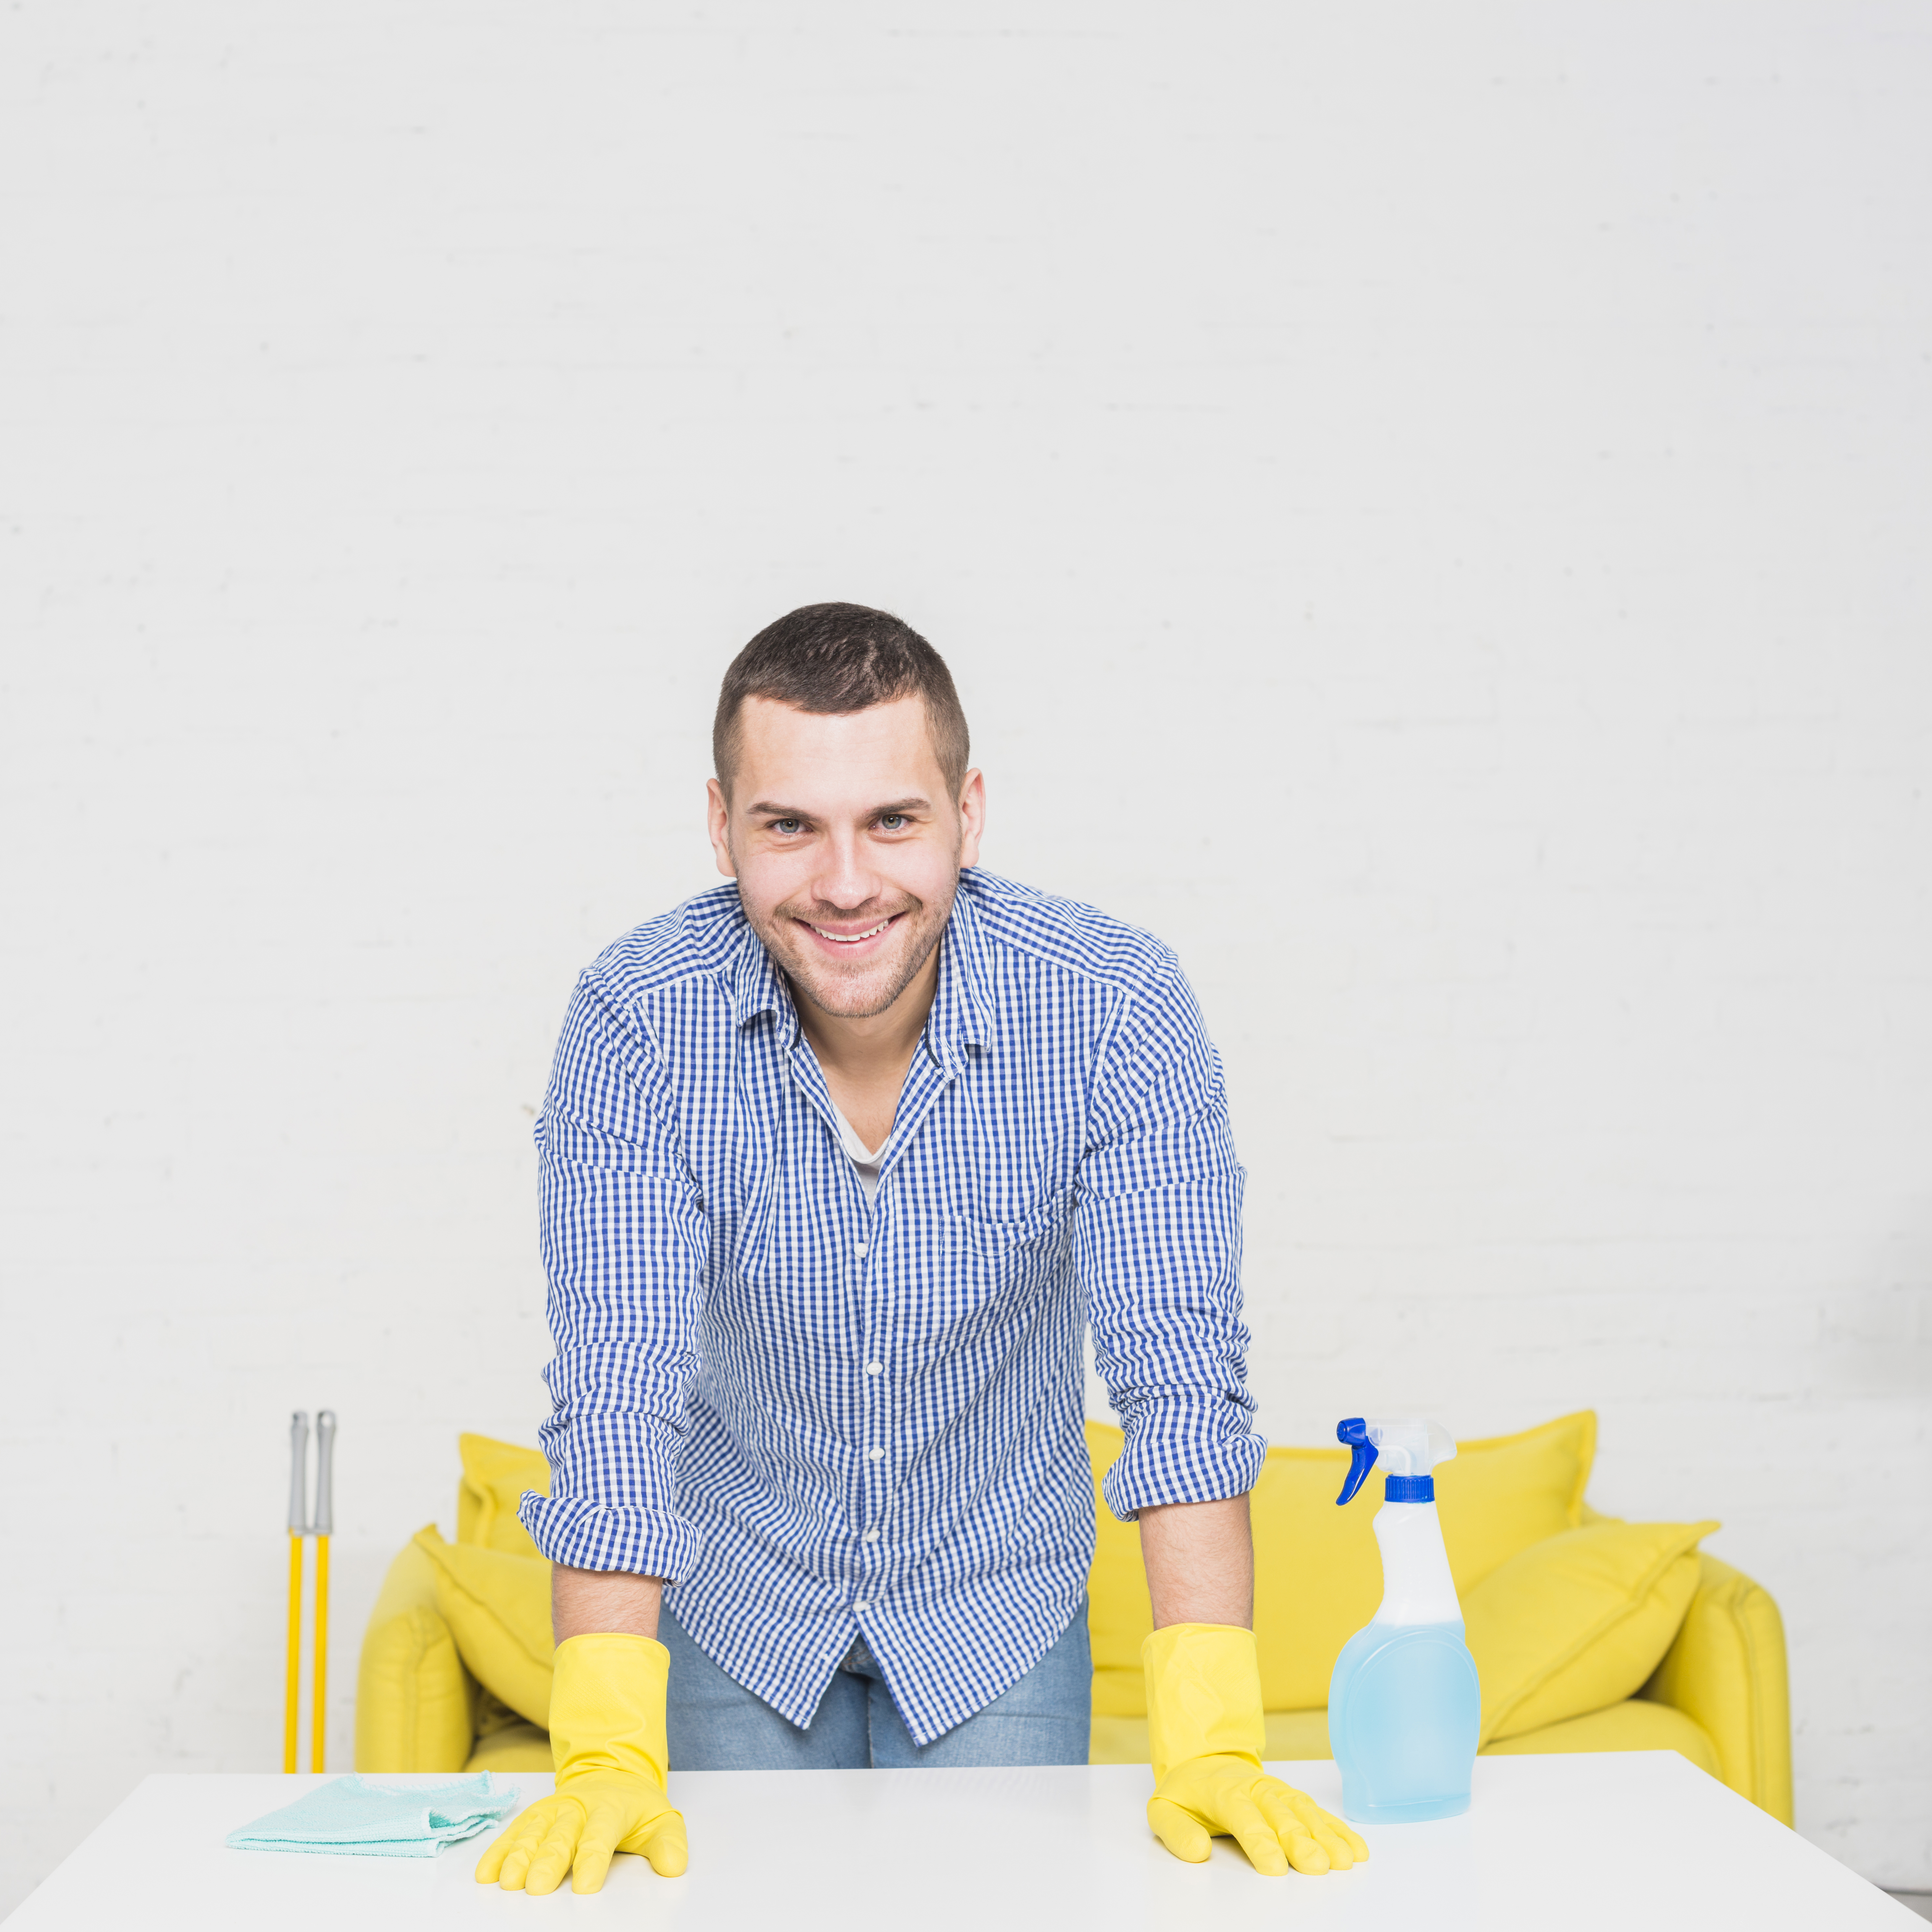 Homme souriant alors qu'il est entouré de matériel de nettoyage | Source : Freepik